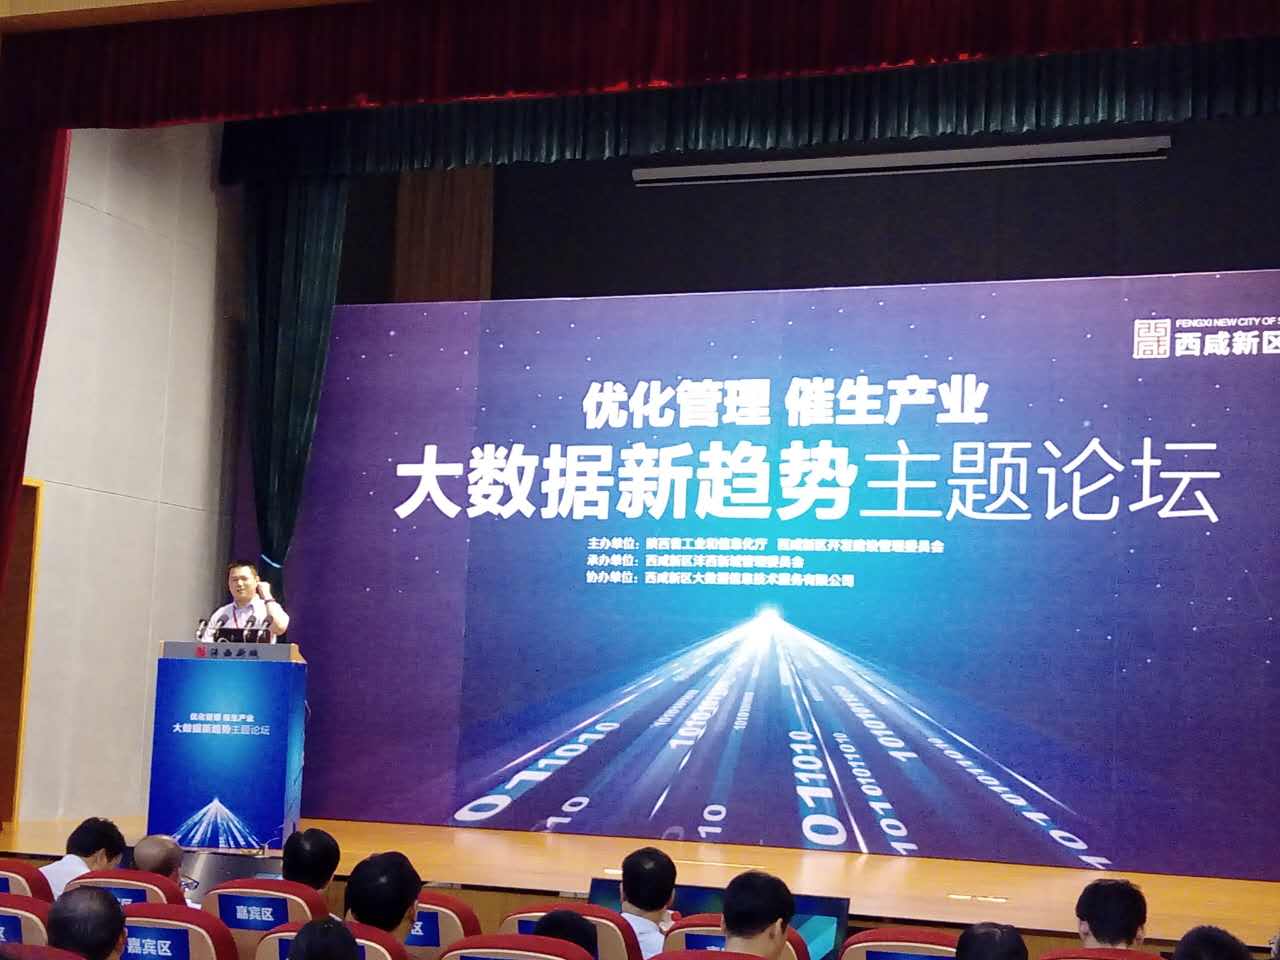 美林数据首席战略官卢耀宗出席“走进陕西大数据基地”活动并演讲